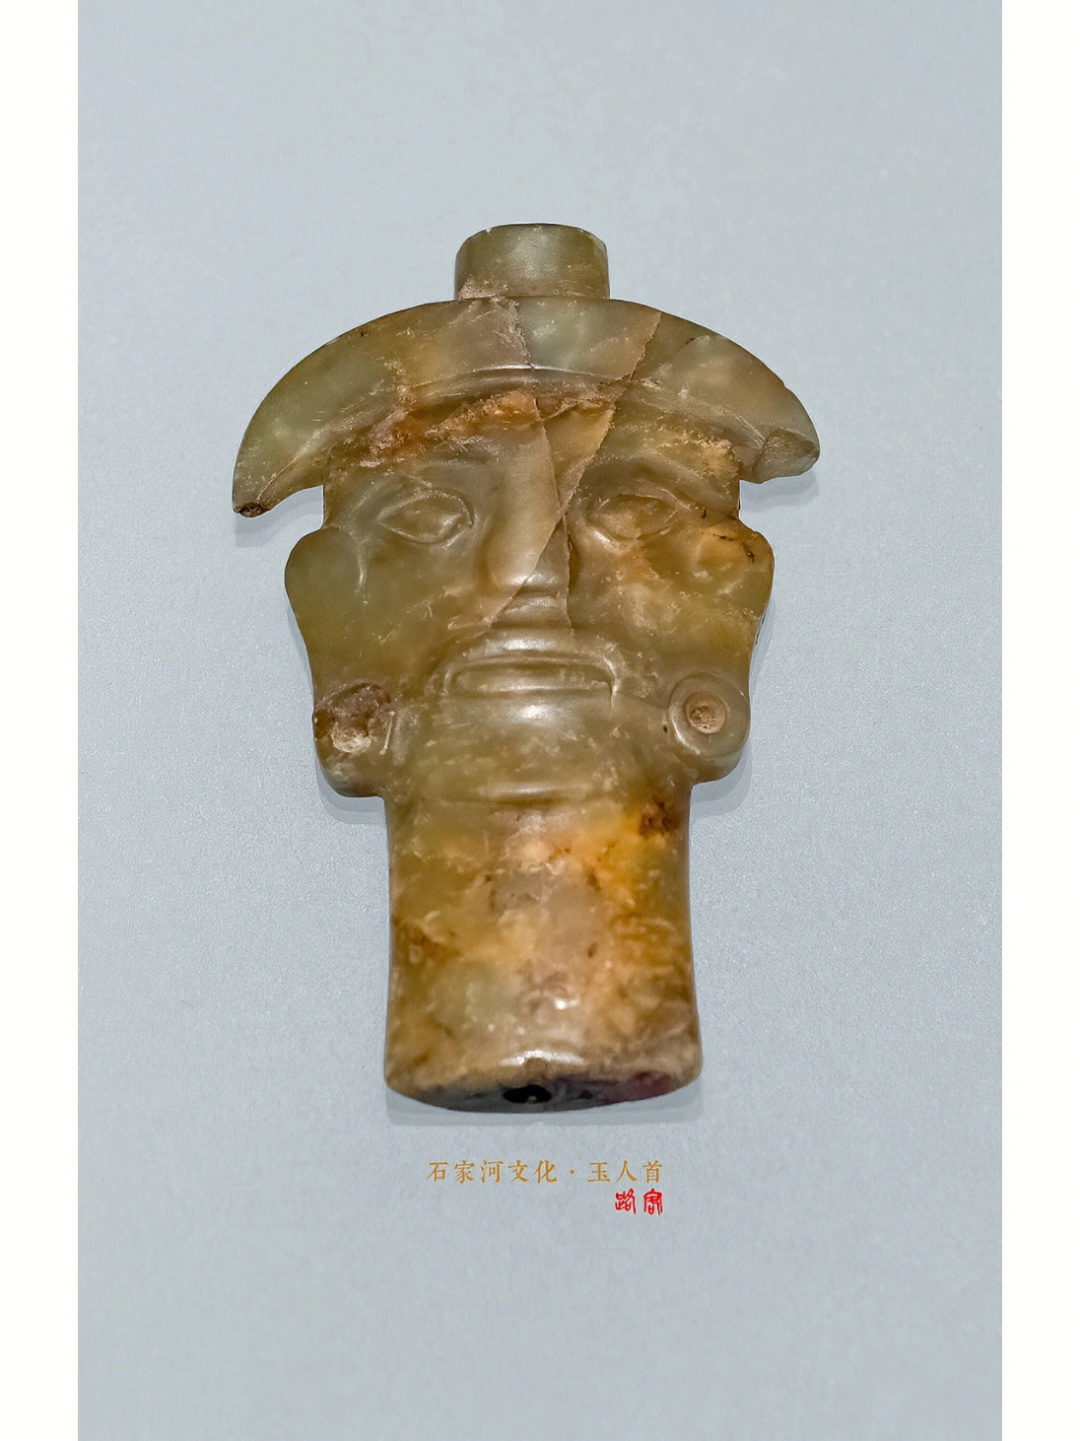 看见美好摄于:@湖南省博物馆石家河文化·玉人首新石器时代(石家河